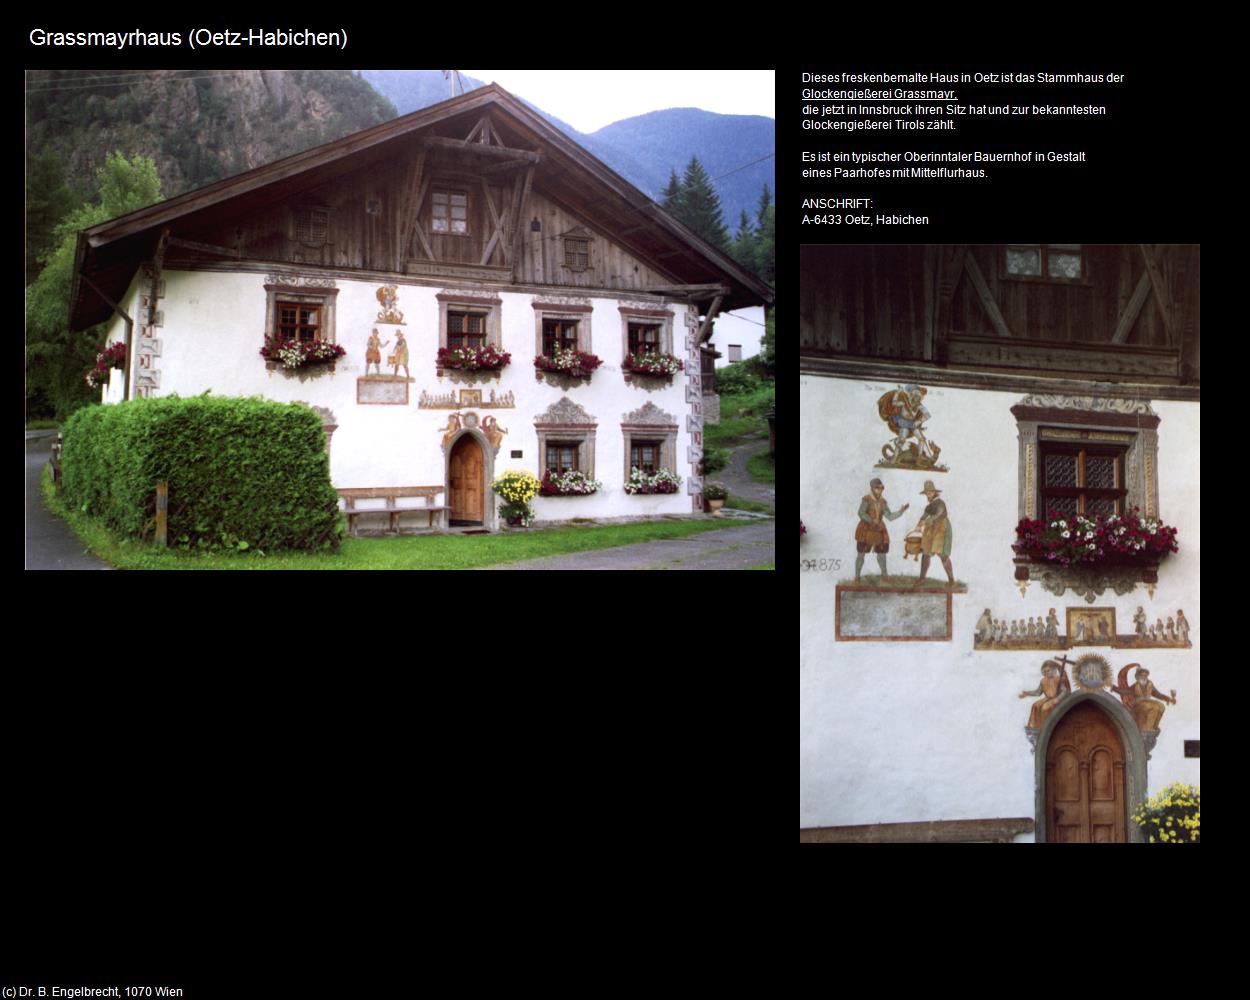 Grassmayrhaus (Habichen) (Oetz) in Kulturatlas-TIROL(c)B.Engelbrecht